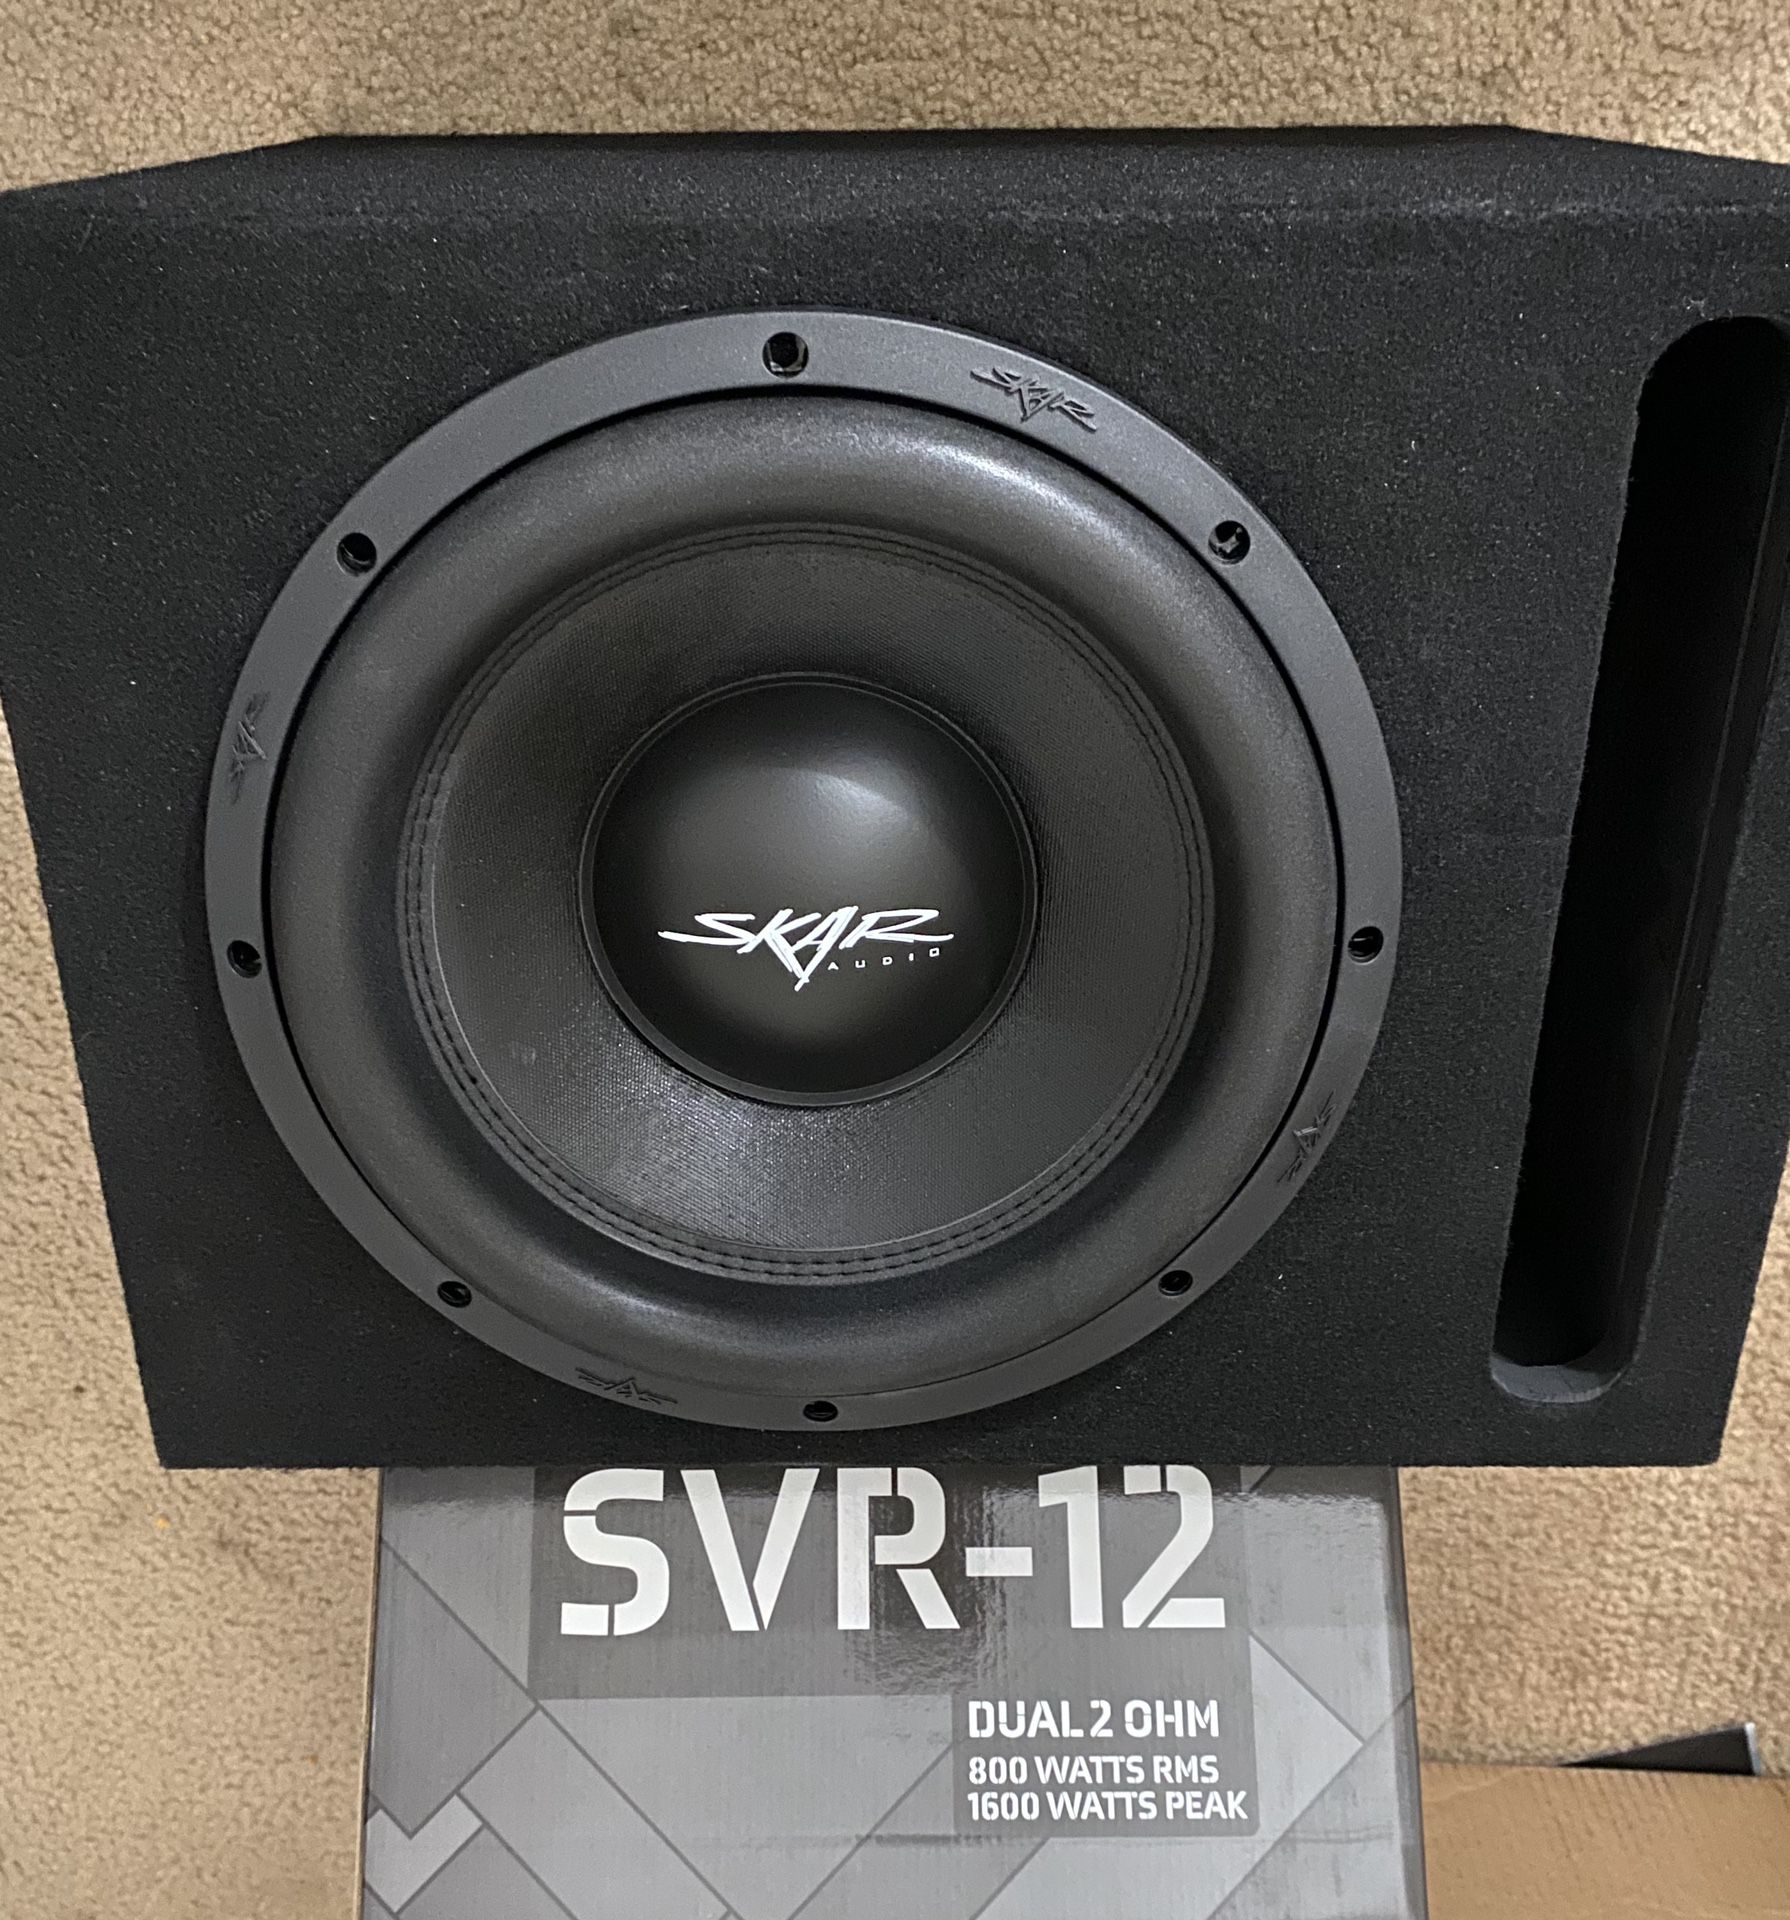 Skar audio 800rms 1600watt subwoofer 12” loud!! 240$